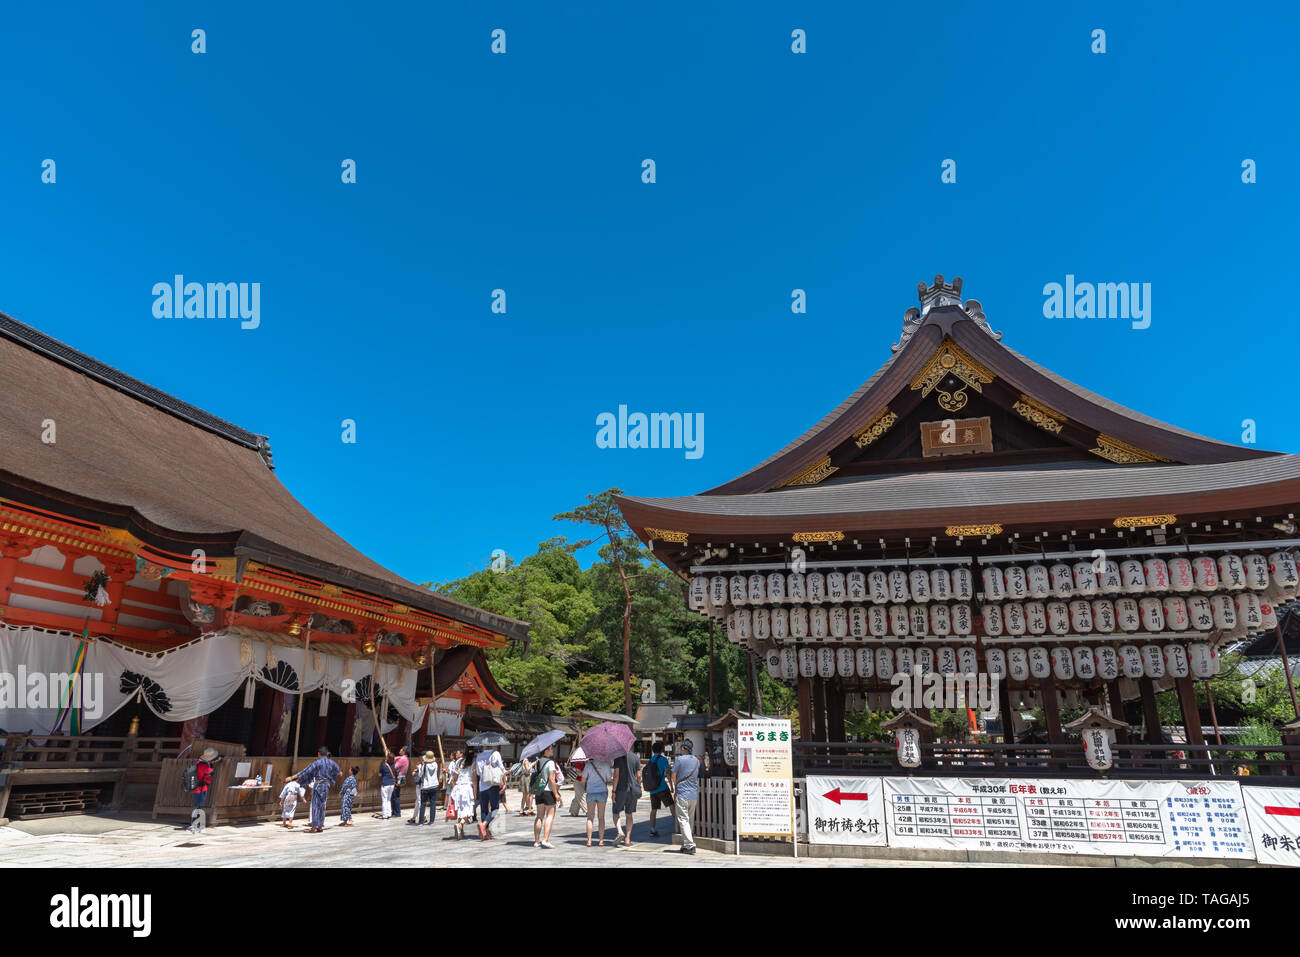 Yasaka o Gion Santuario. Il santuario Yasaka è uno dei più famosi santuari in Kyoto tra il quartiere di Gion e Higashiyama District. Foto Stock